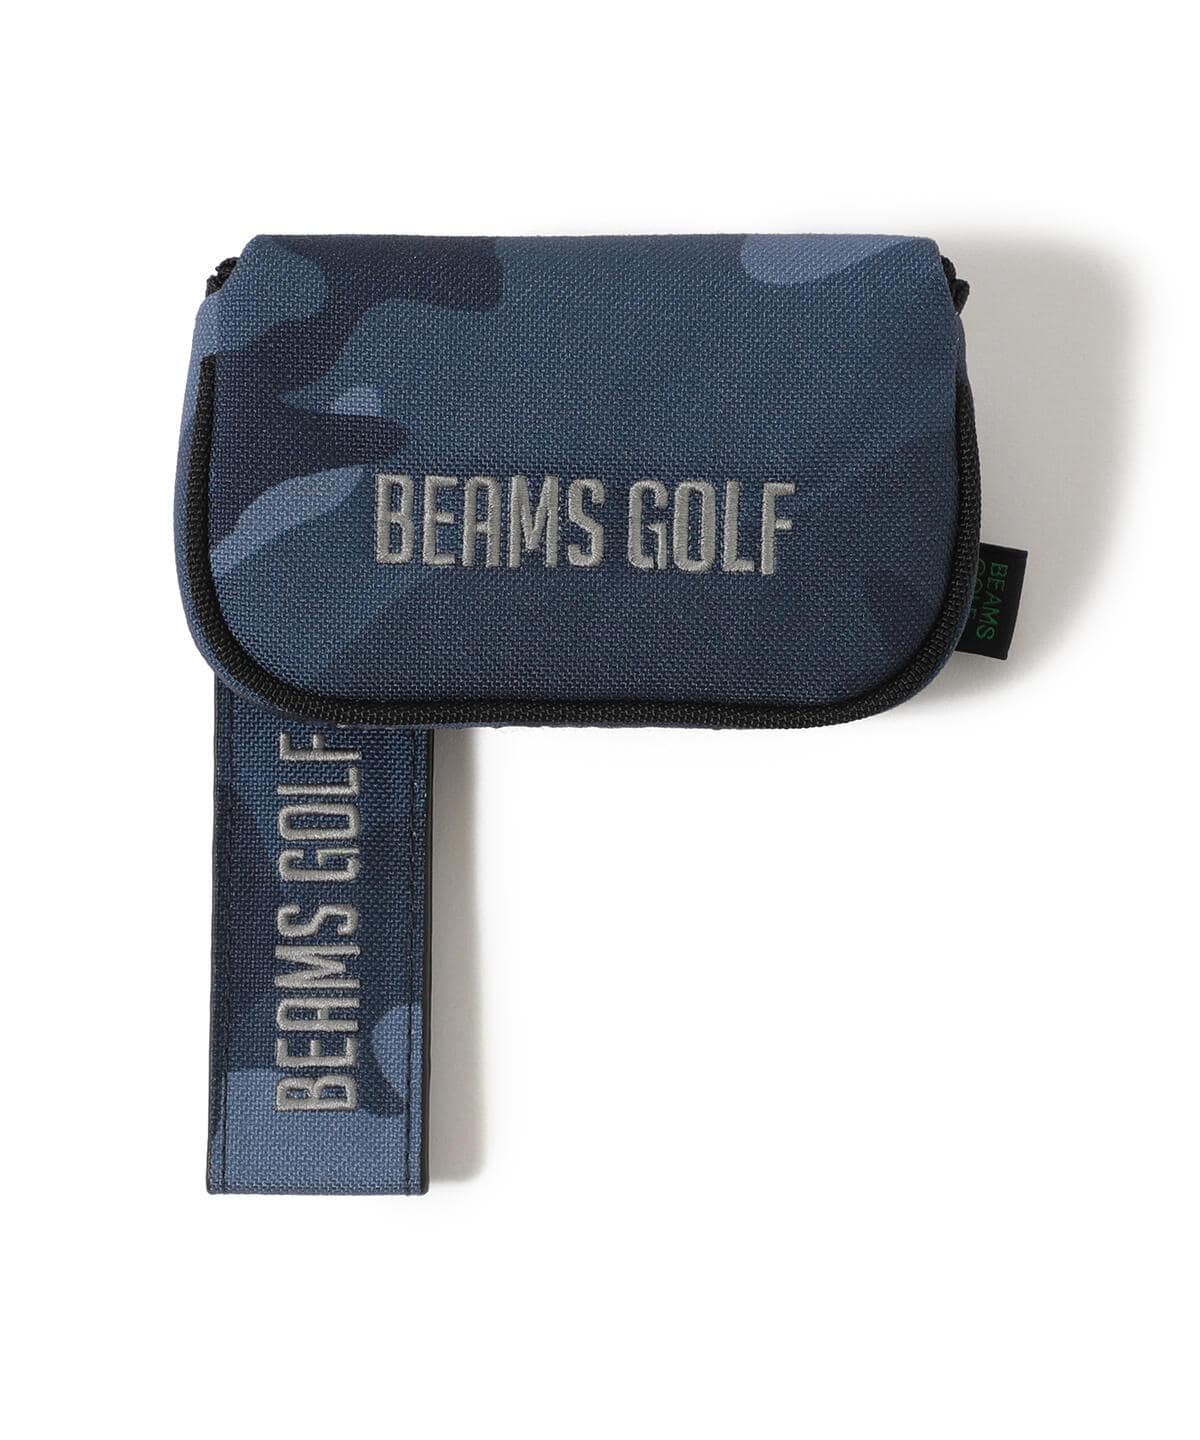 日本製 ゴルフ BEAMS GOLF ブルーグレー カモフラージュ パターカバー ピン型 6 050円 autoservicetiemcomaat.nl